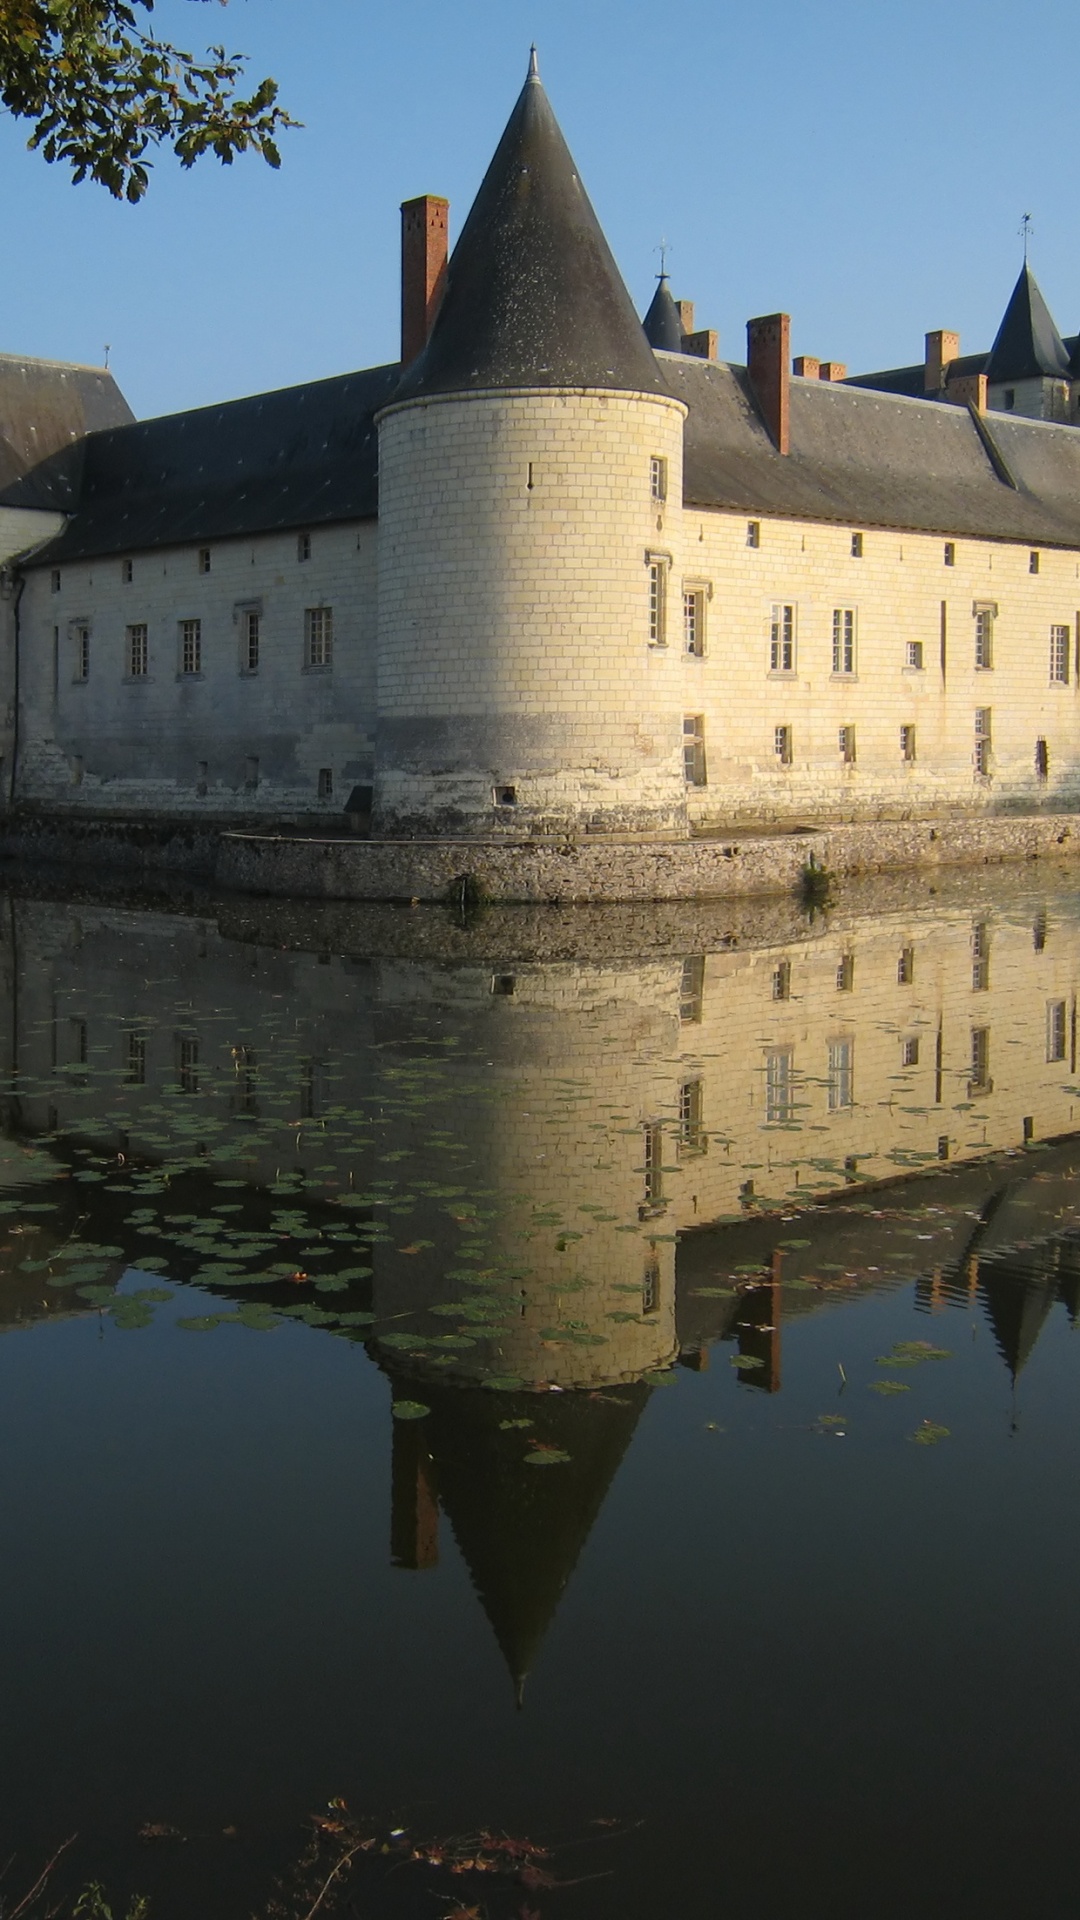 Schloss, Reflexion, Wasserburg, Wasserstraße, Graben. Wallpaper in 1080x1920 Resolution